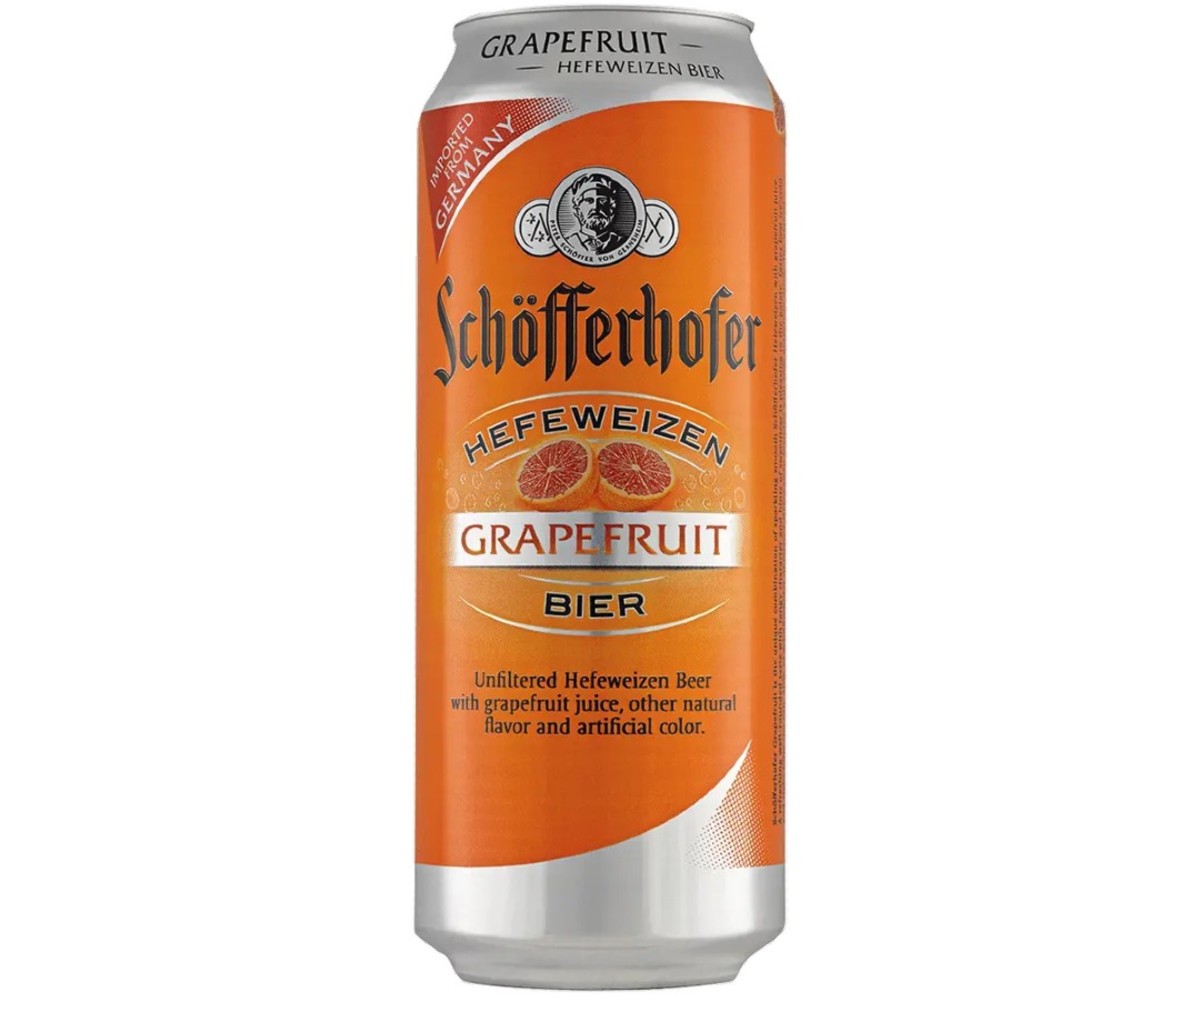 A orange can of Radeberger Gruppe Schöfferhofer Grapefruit beer.